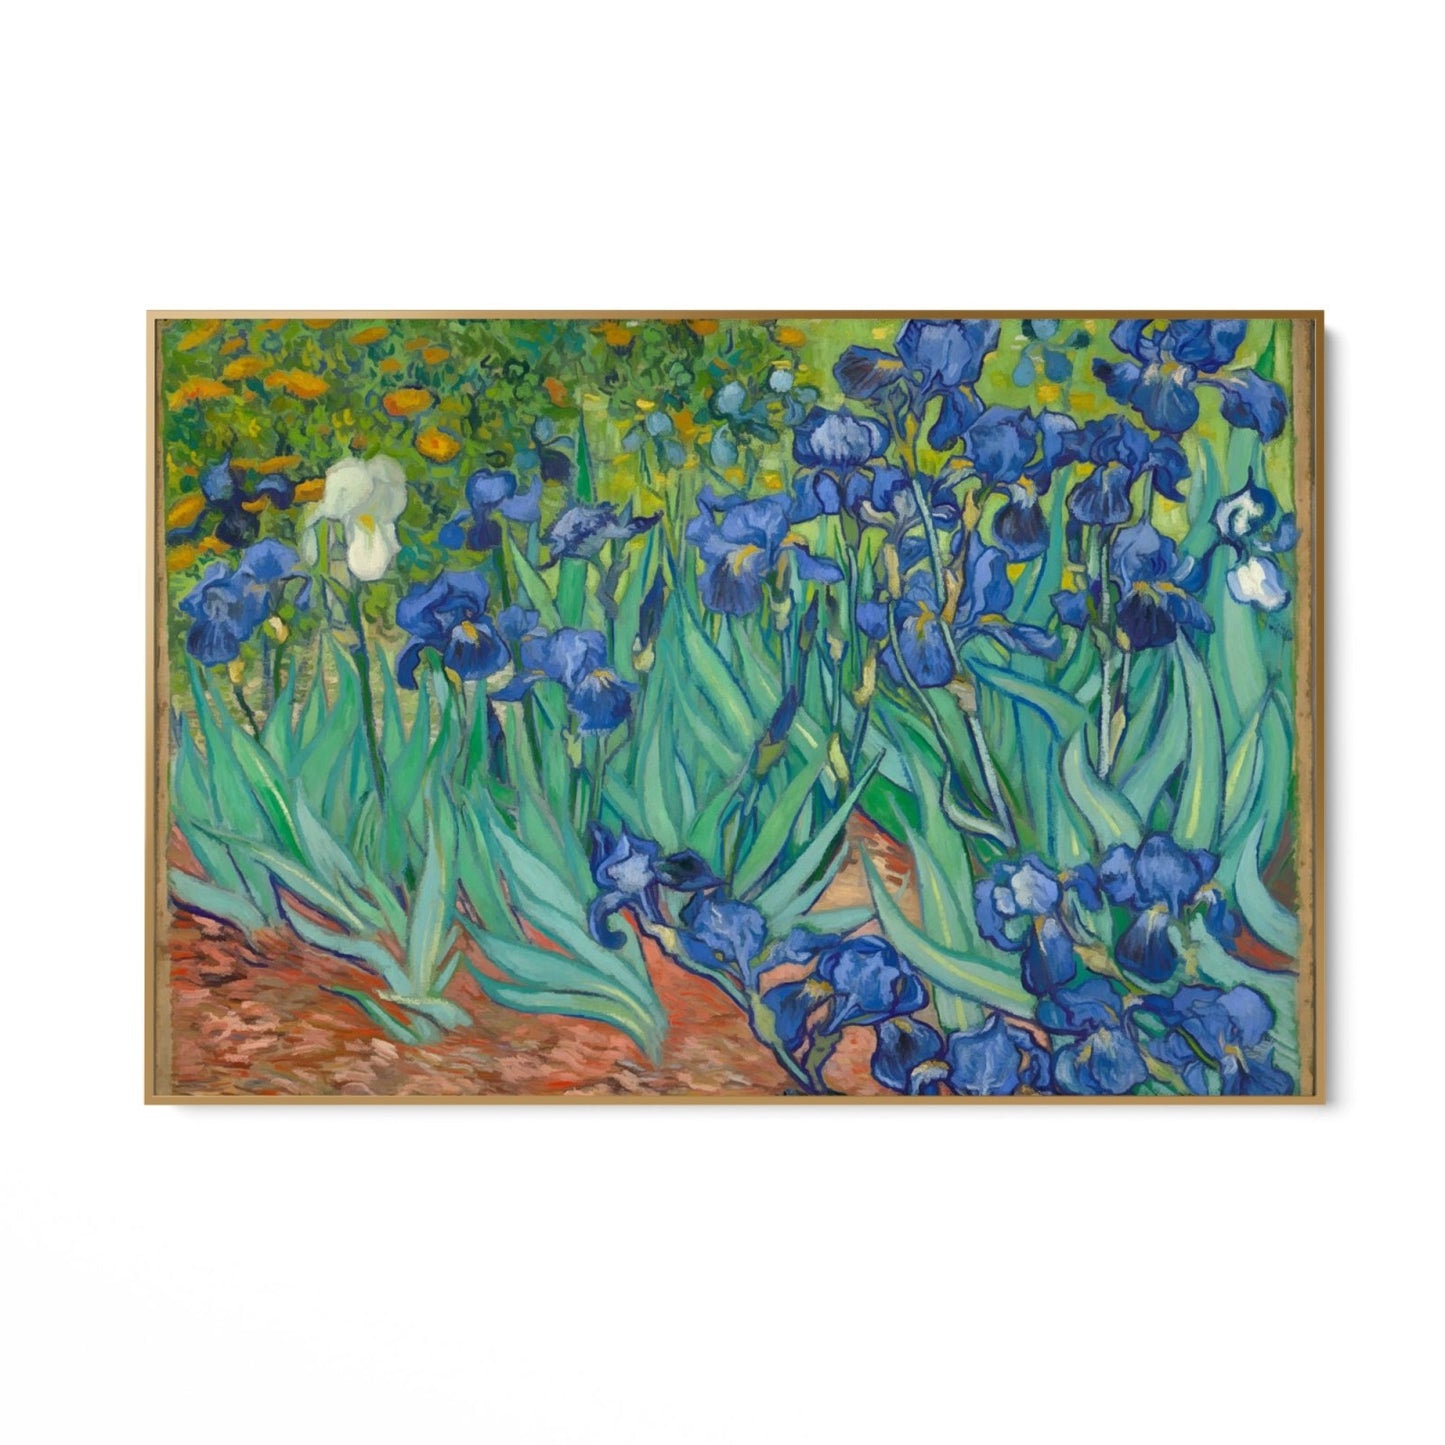 Irissen 1889, Vincent van Gogh